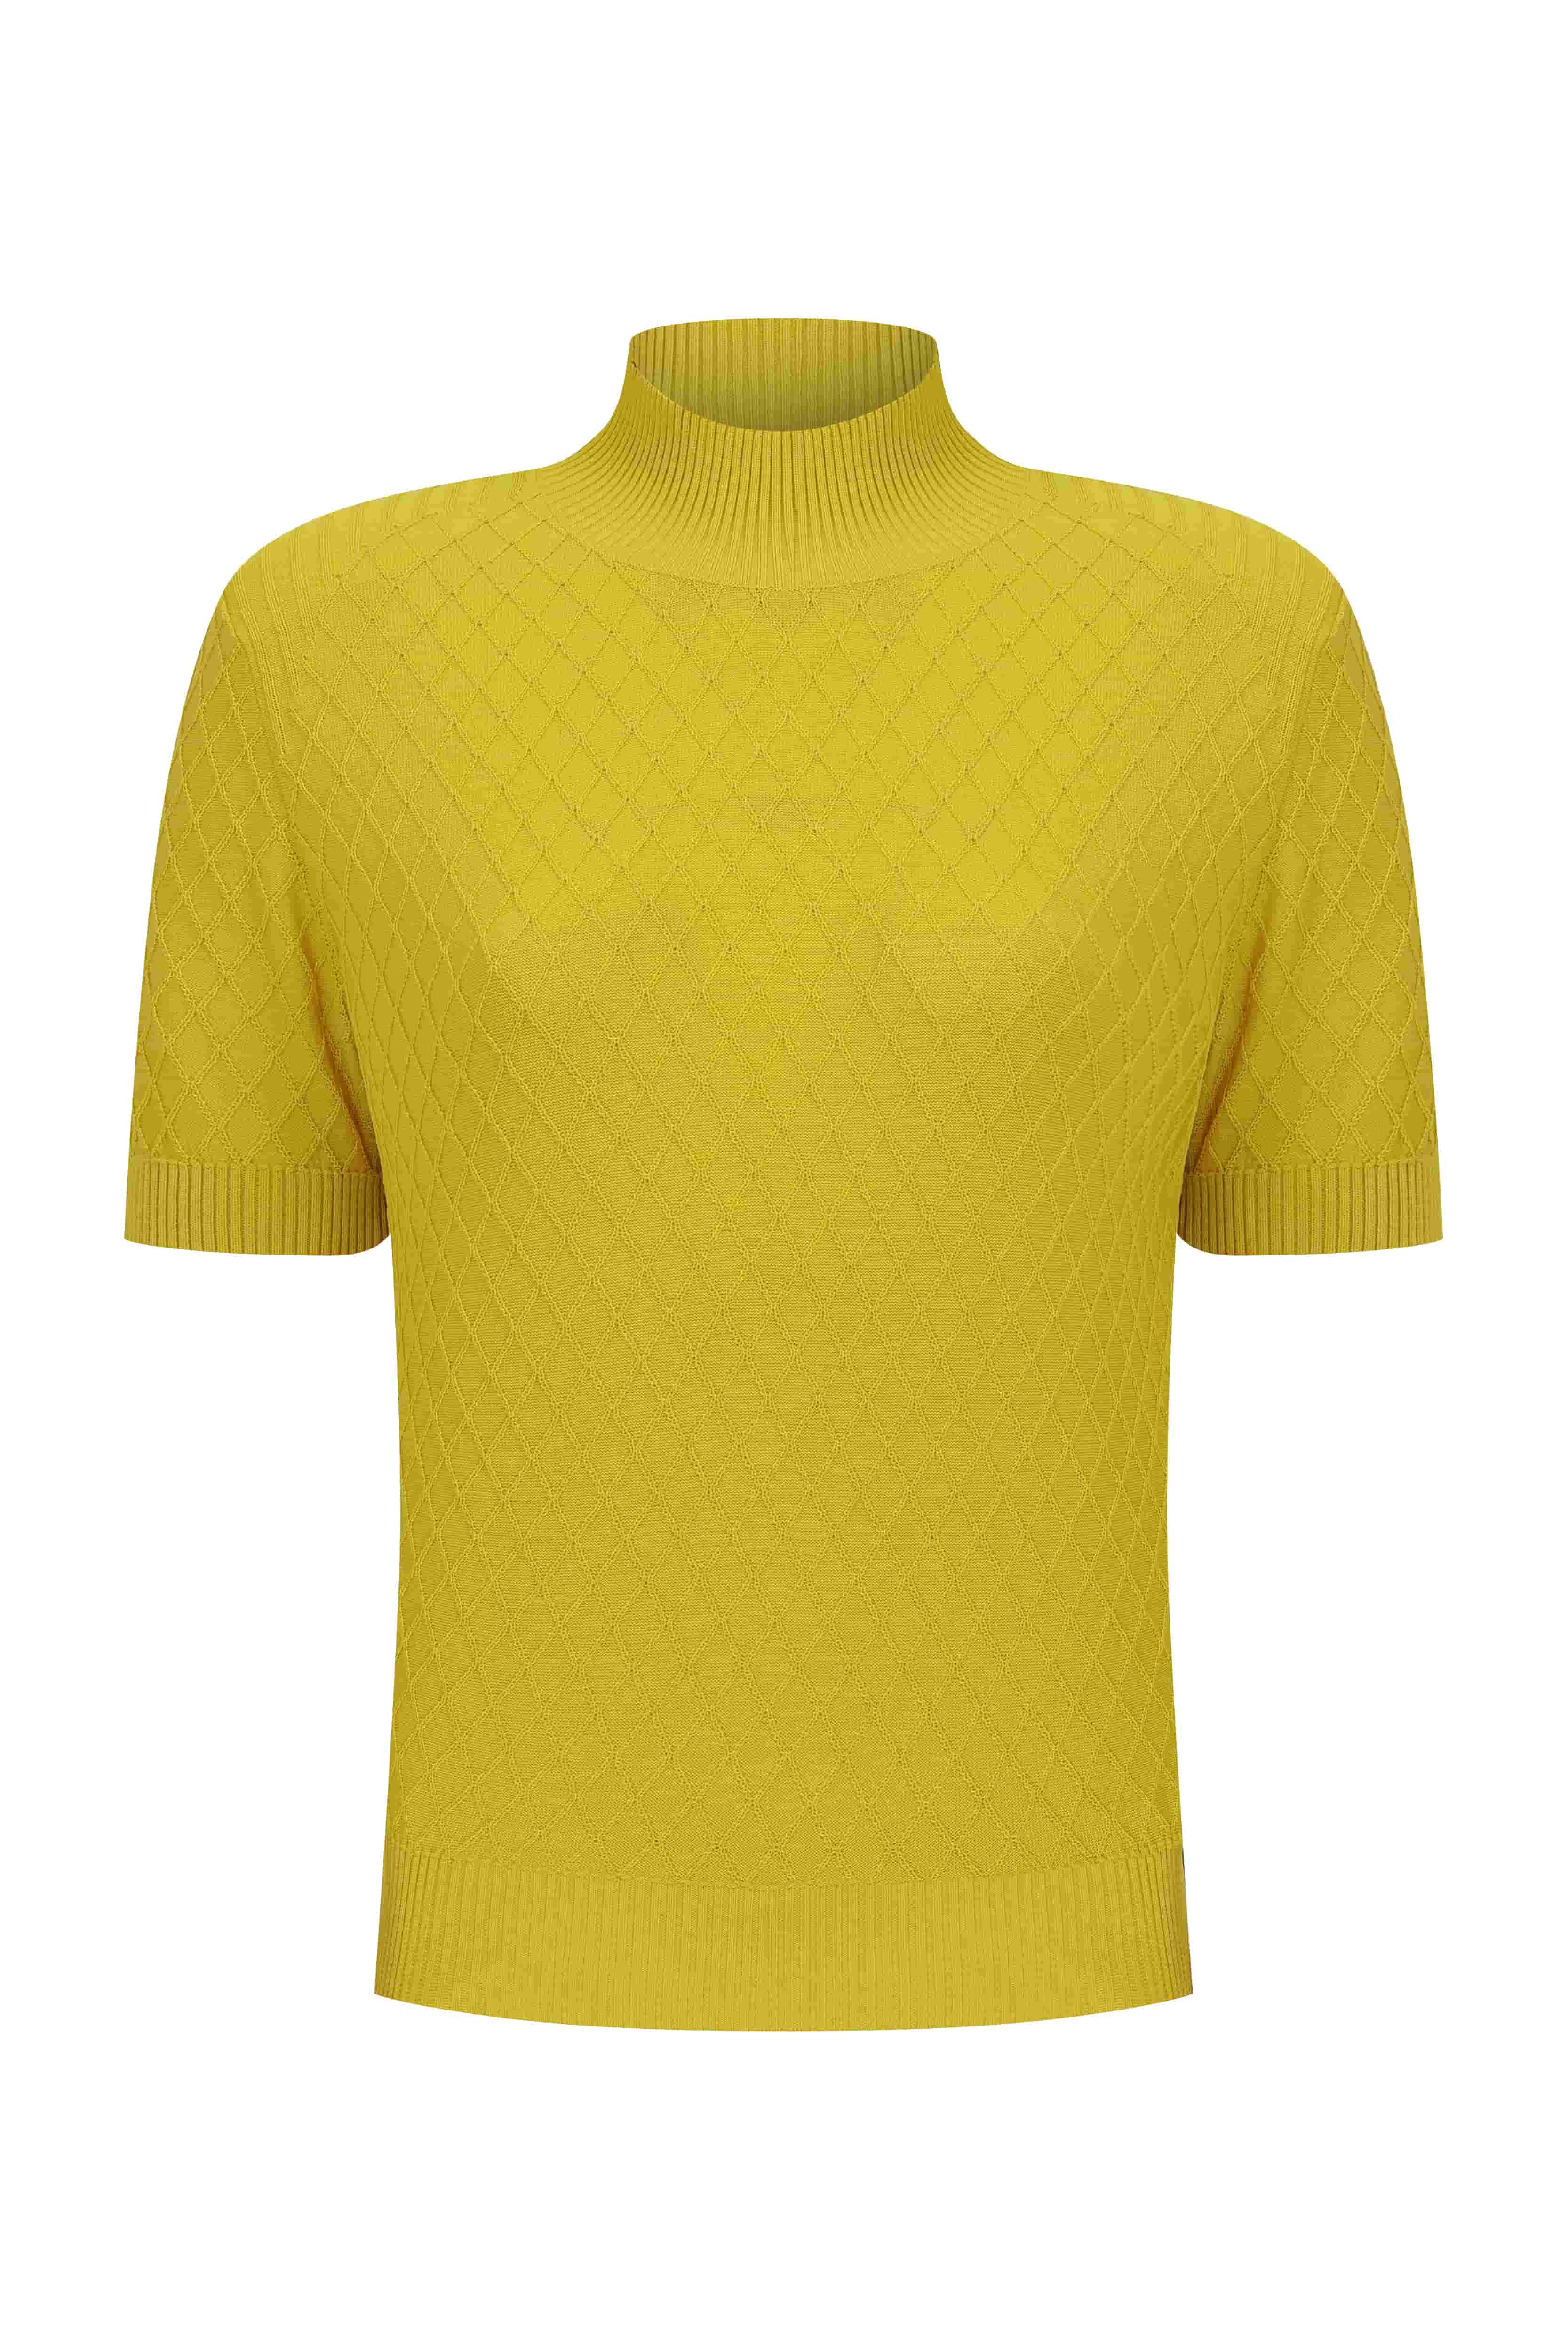 Roman Yellow Turtleneck Women's Knitwear. 2